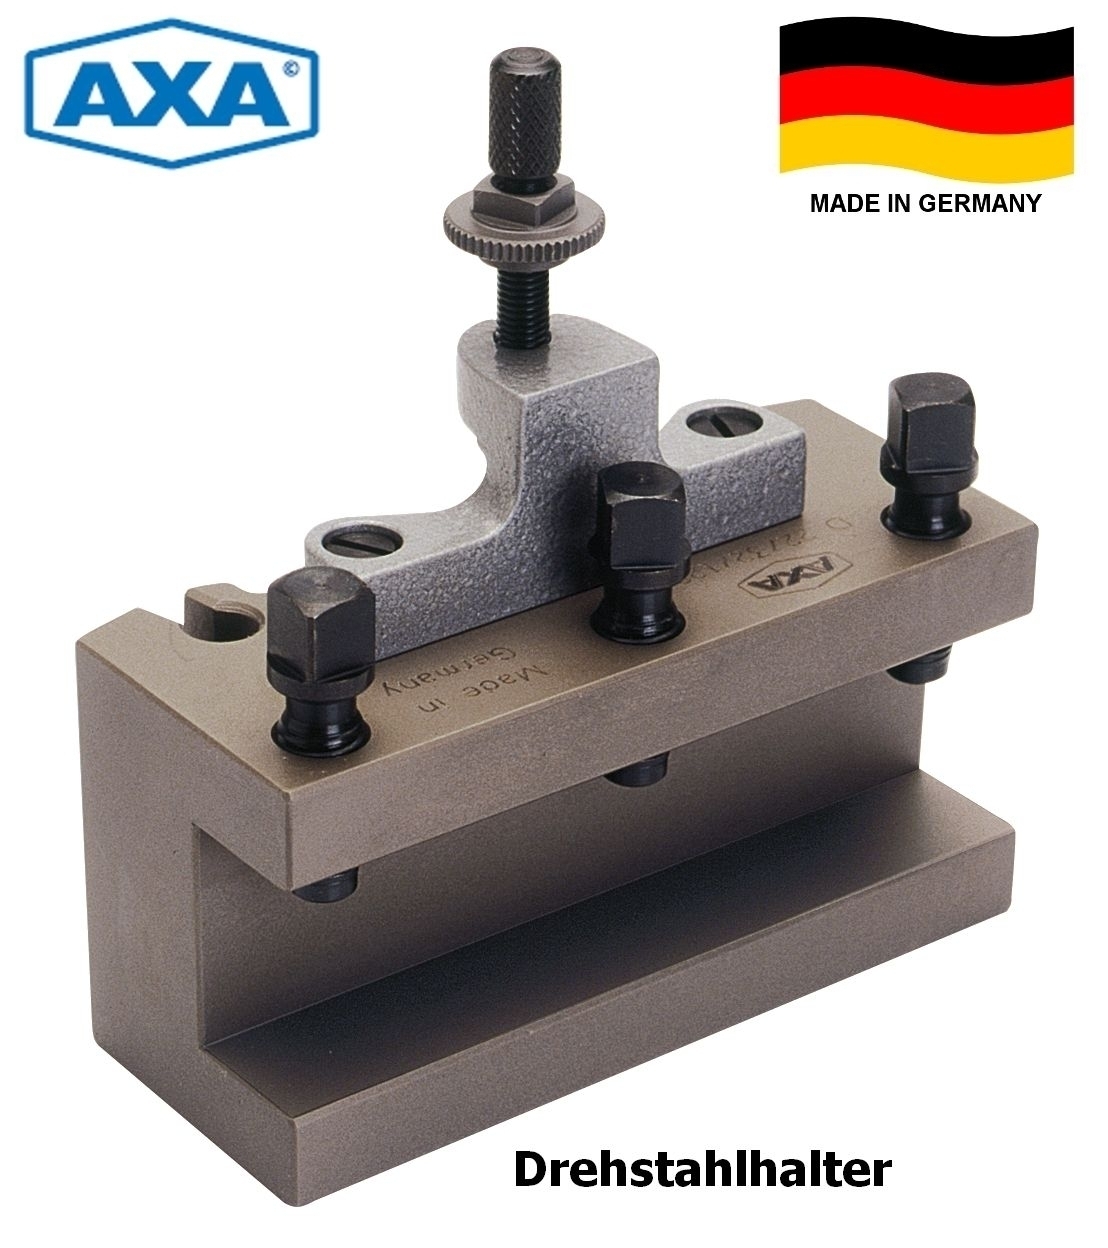 AXA Schnellwechsel-Drehstahlhalter BD 32120 | D22/32/120